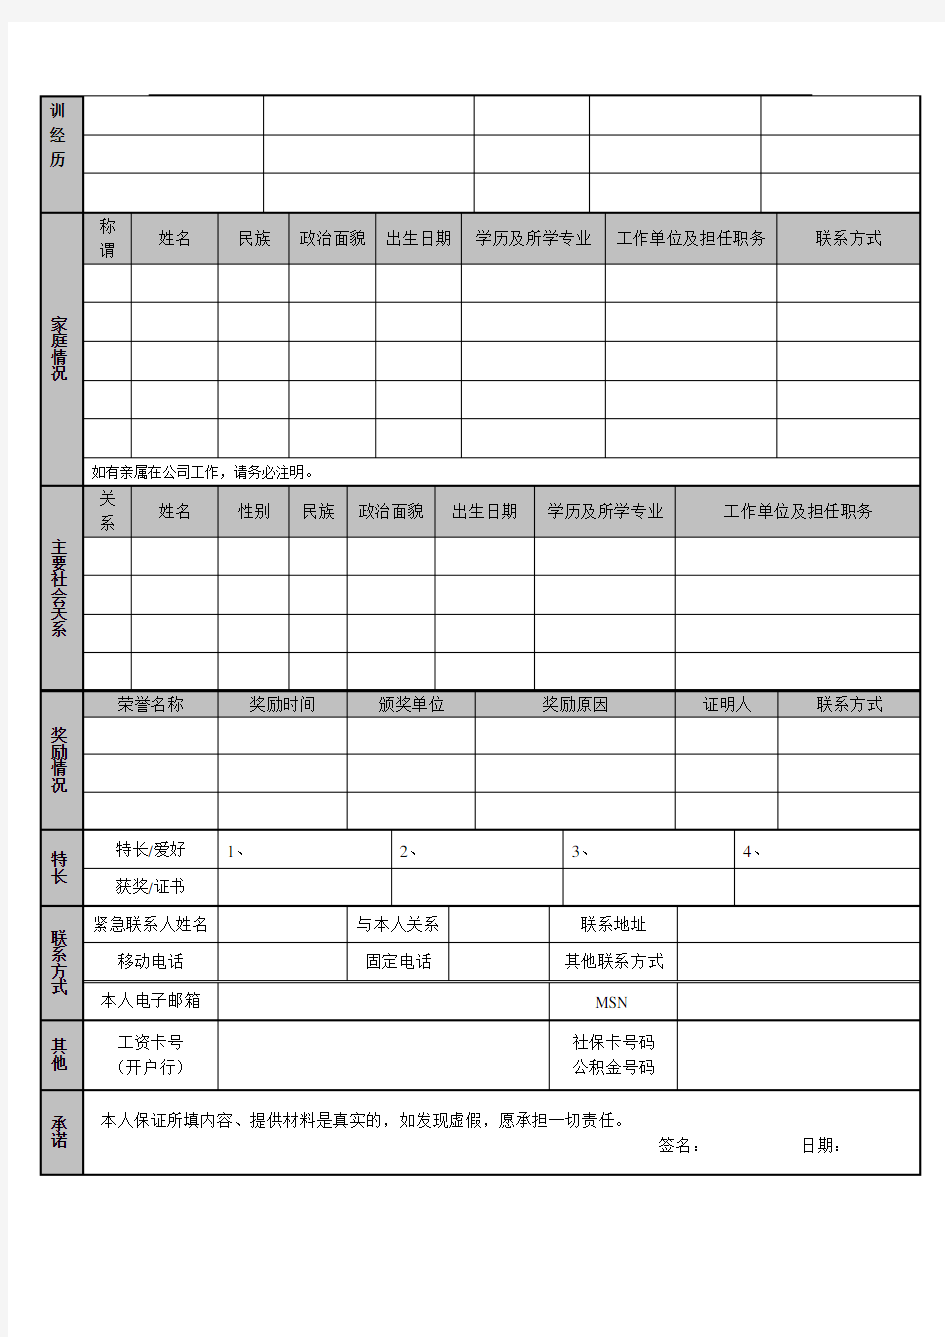 公司员工档案信息登记表(通用版)